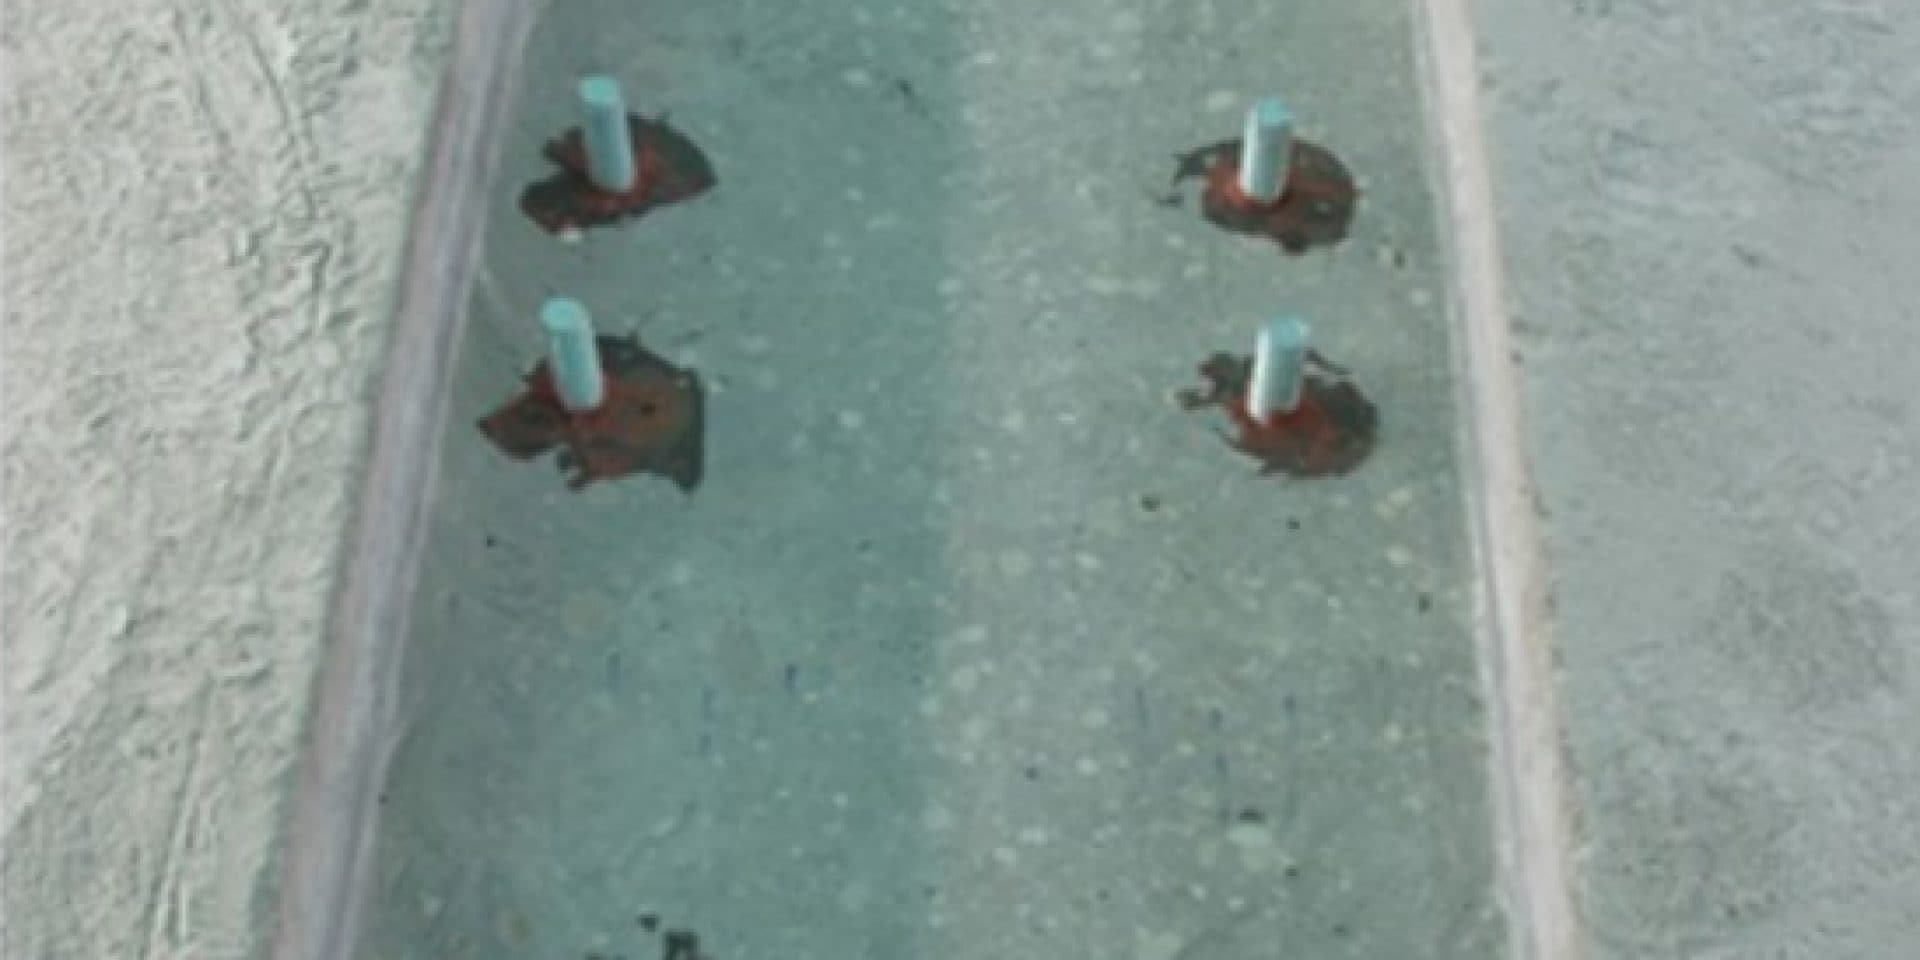 HIT RE 500 - wklejanie prętów gwintowanych w celu zamocowania szyn po których będzie się poruszała suwnica do przeładunku kontenerów